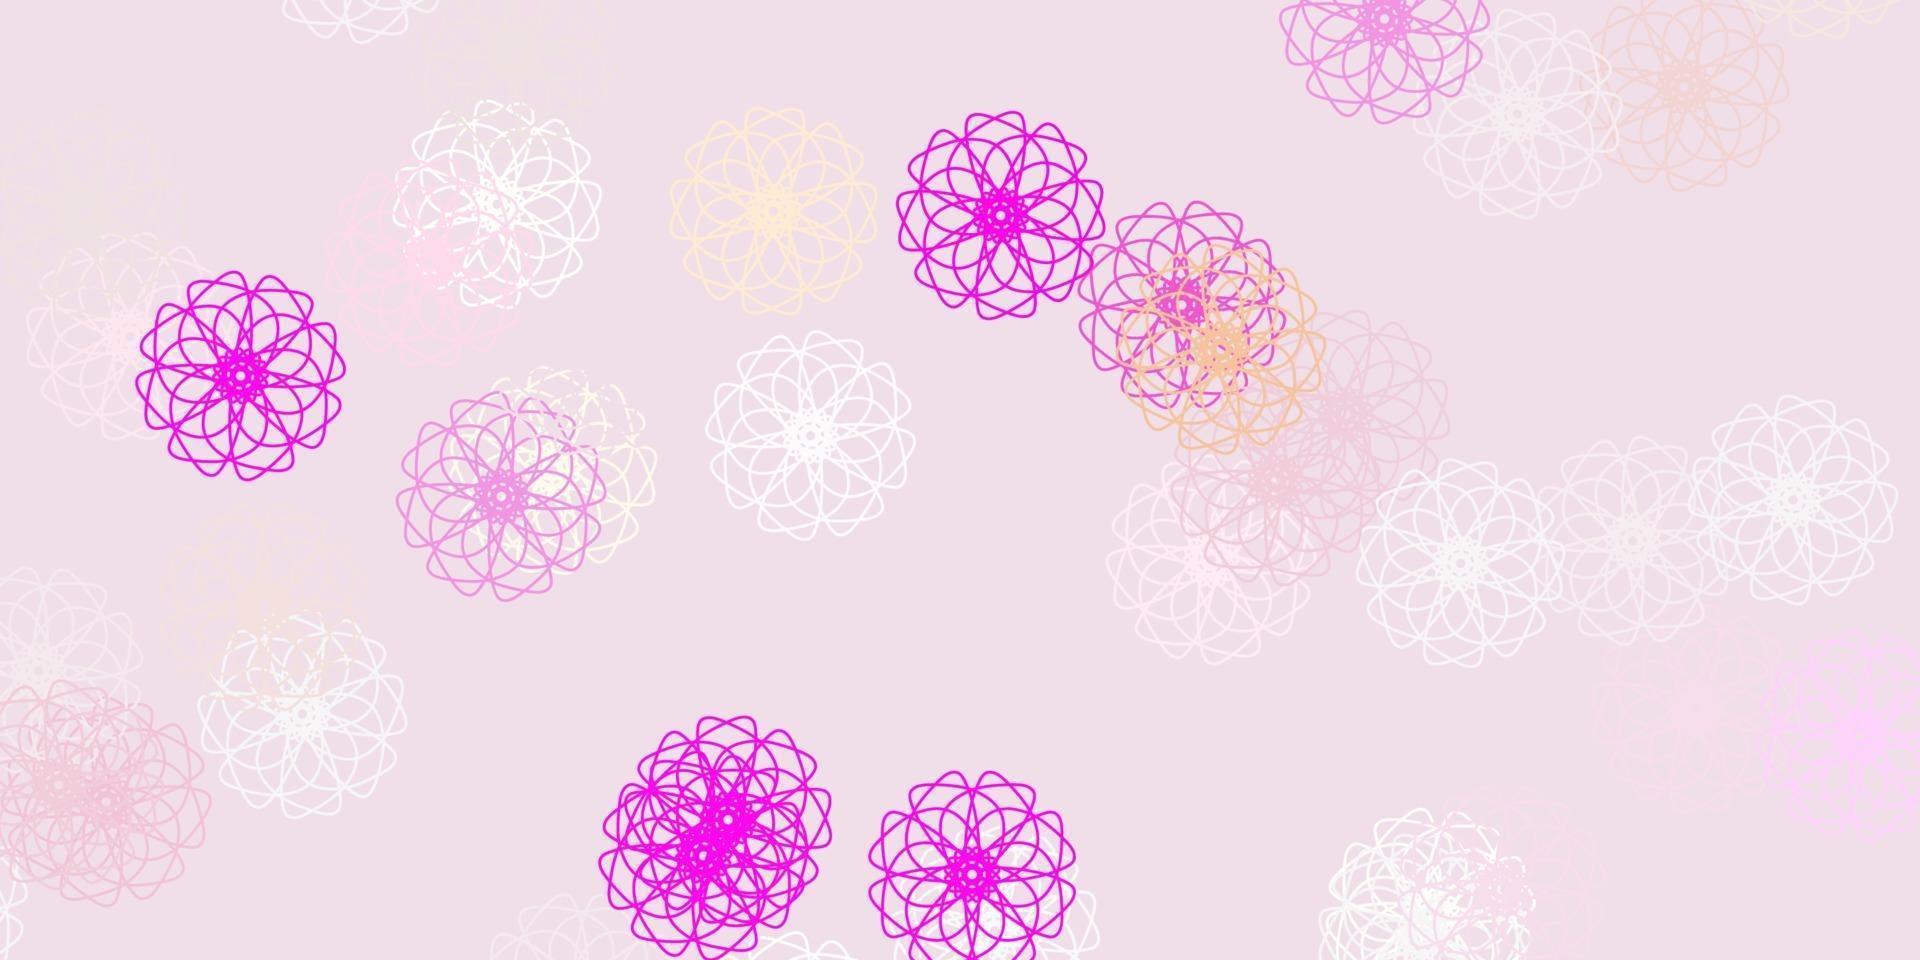 layout natural do vetor rosa claro com flores.